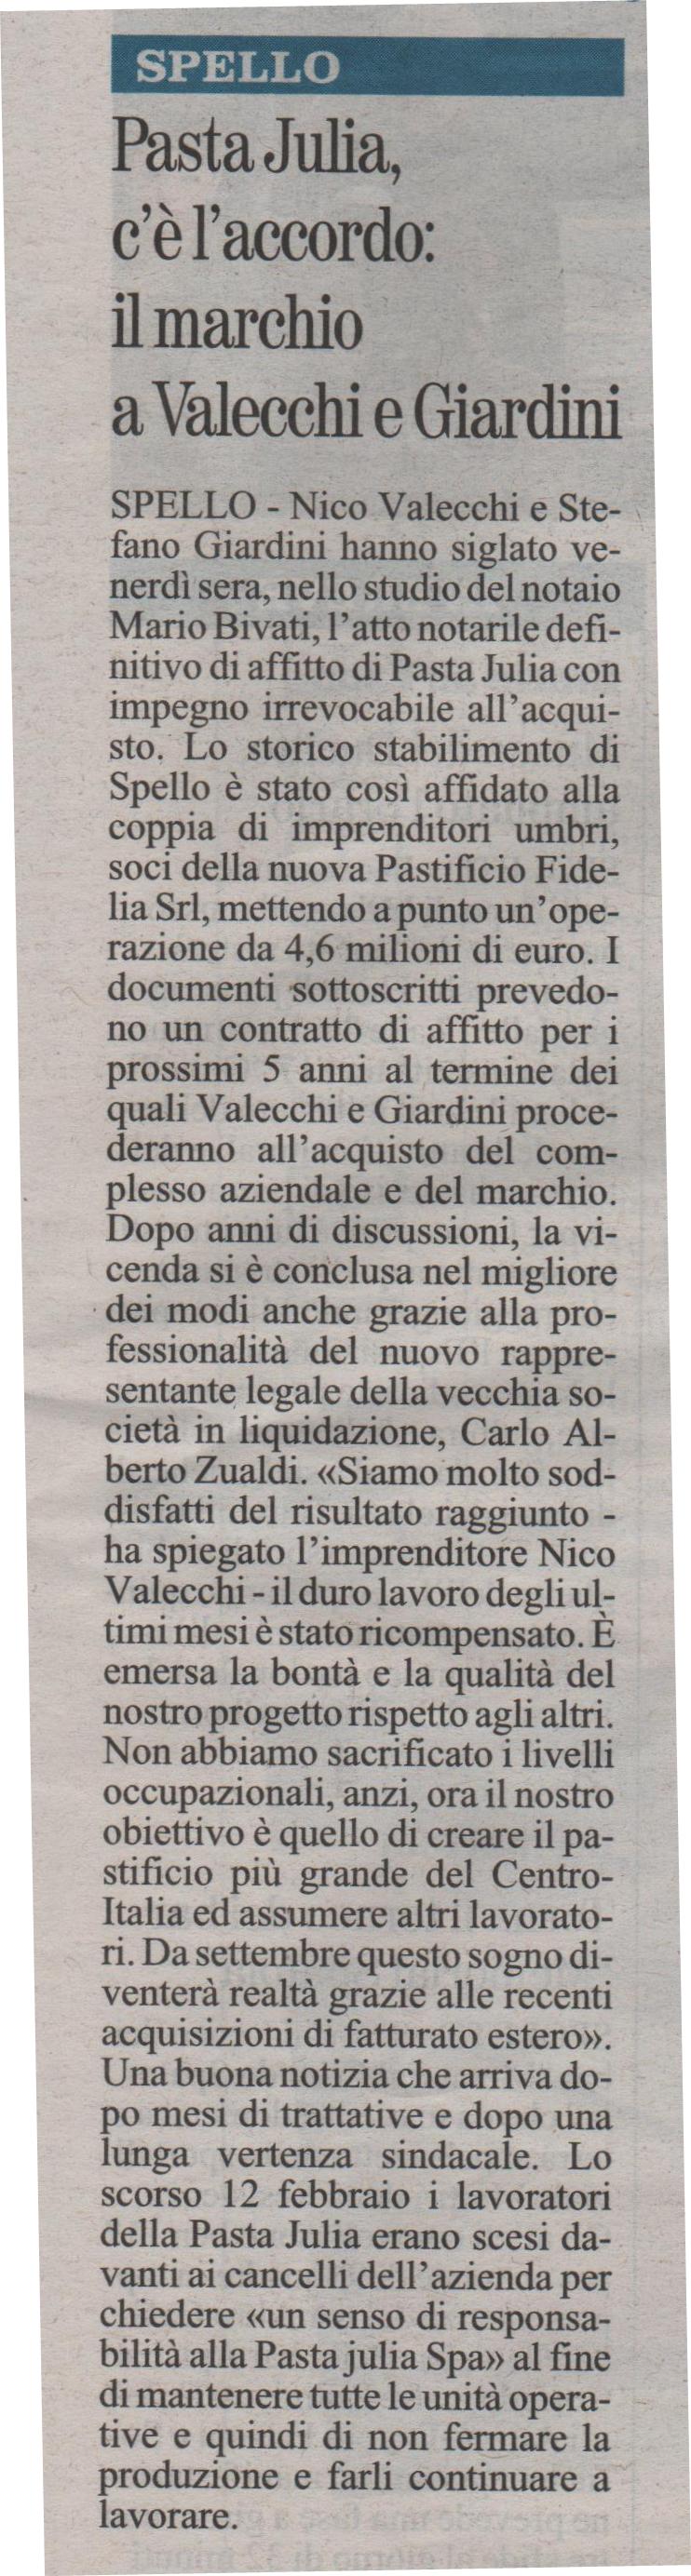 Giornale dell’Umbria 31.05.2015